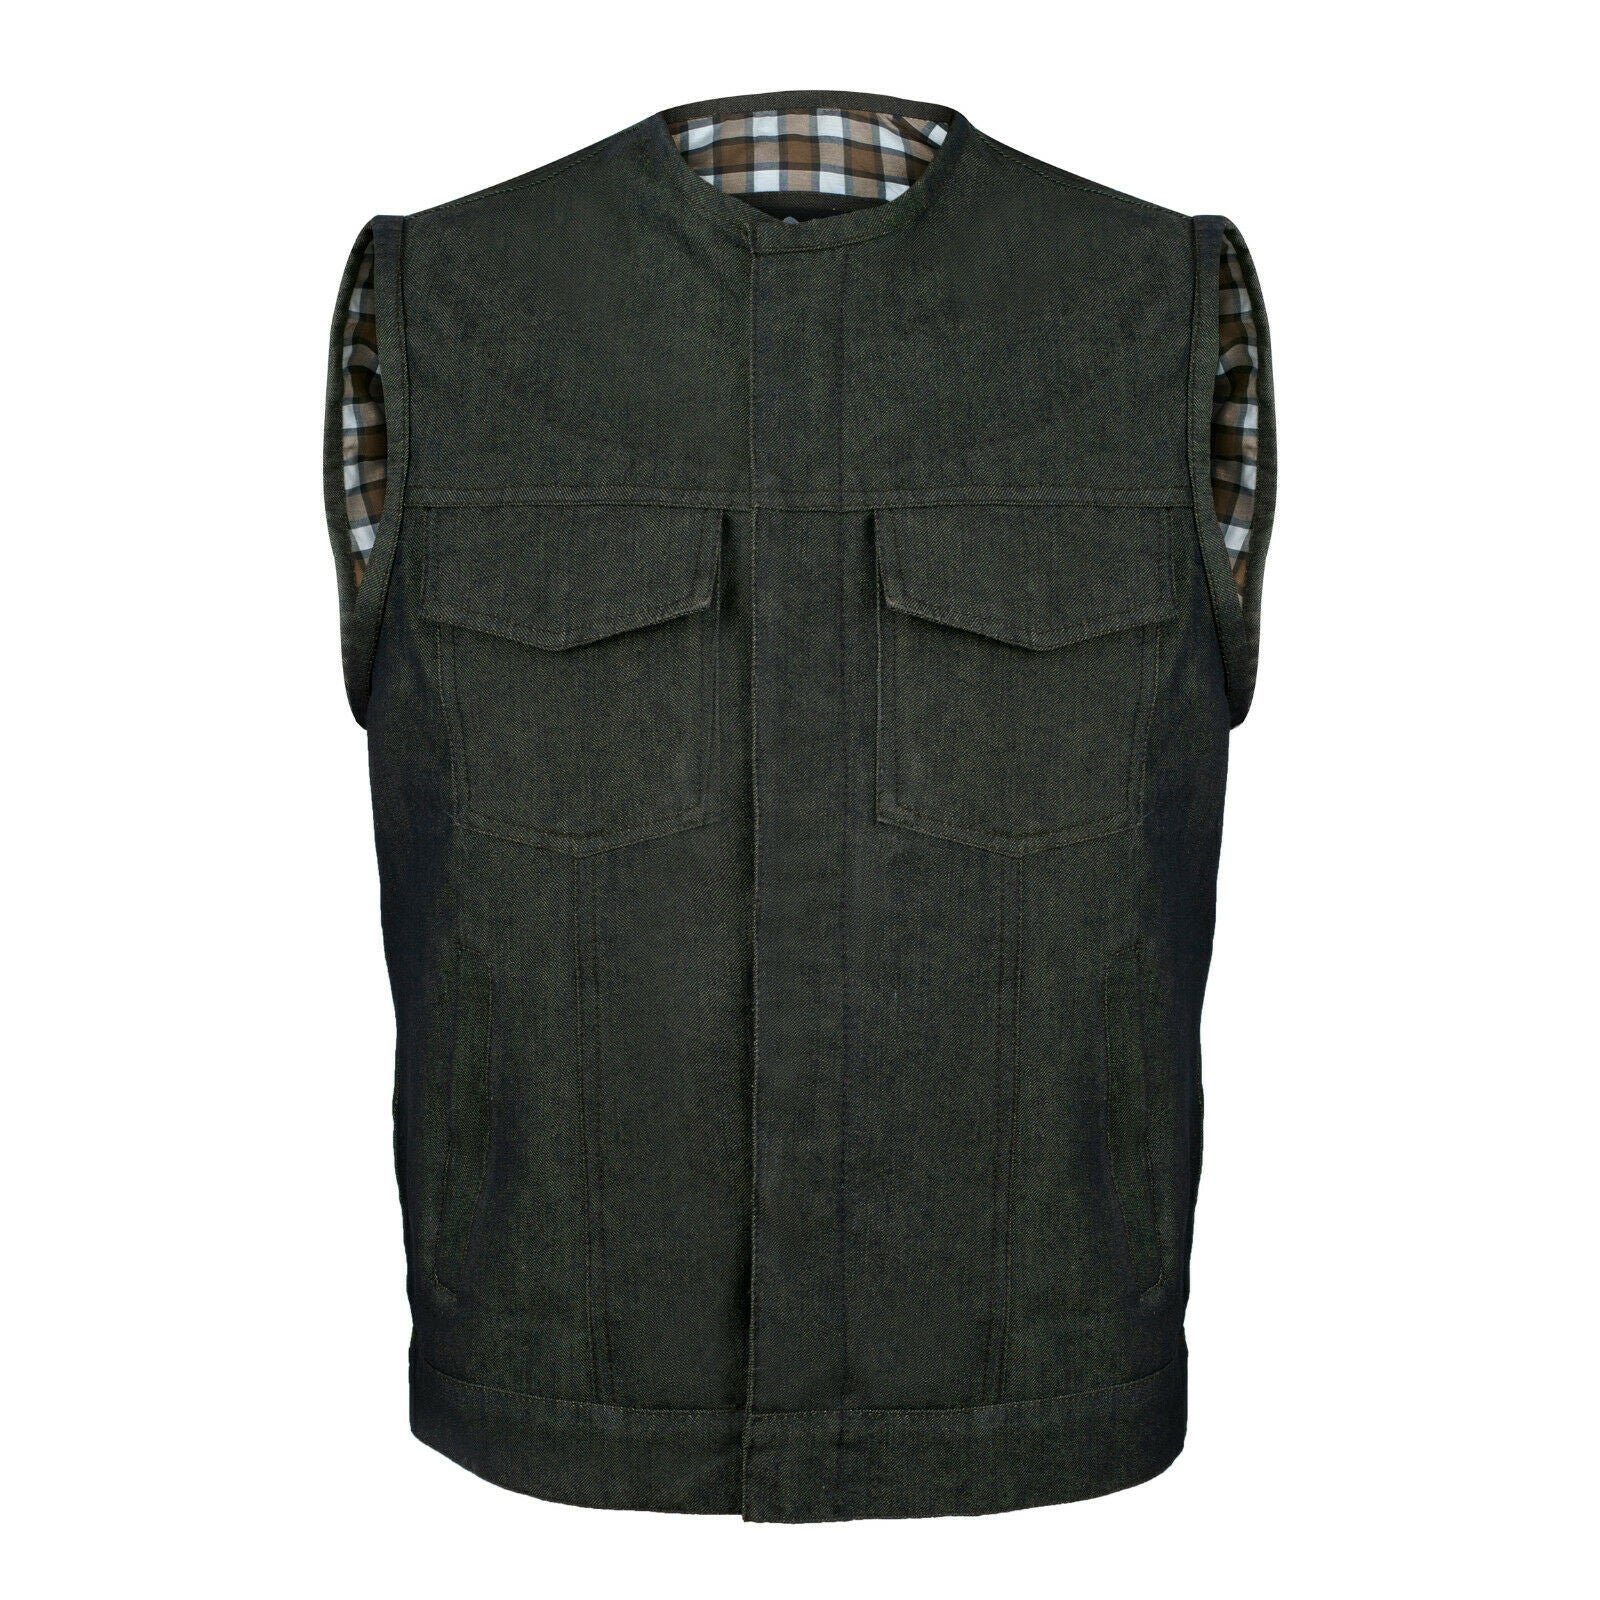 Buy The Bikers Zone Men's 100% Cotton Basic Denim Vest M (42) Black at  Amazon.in